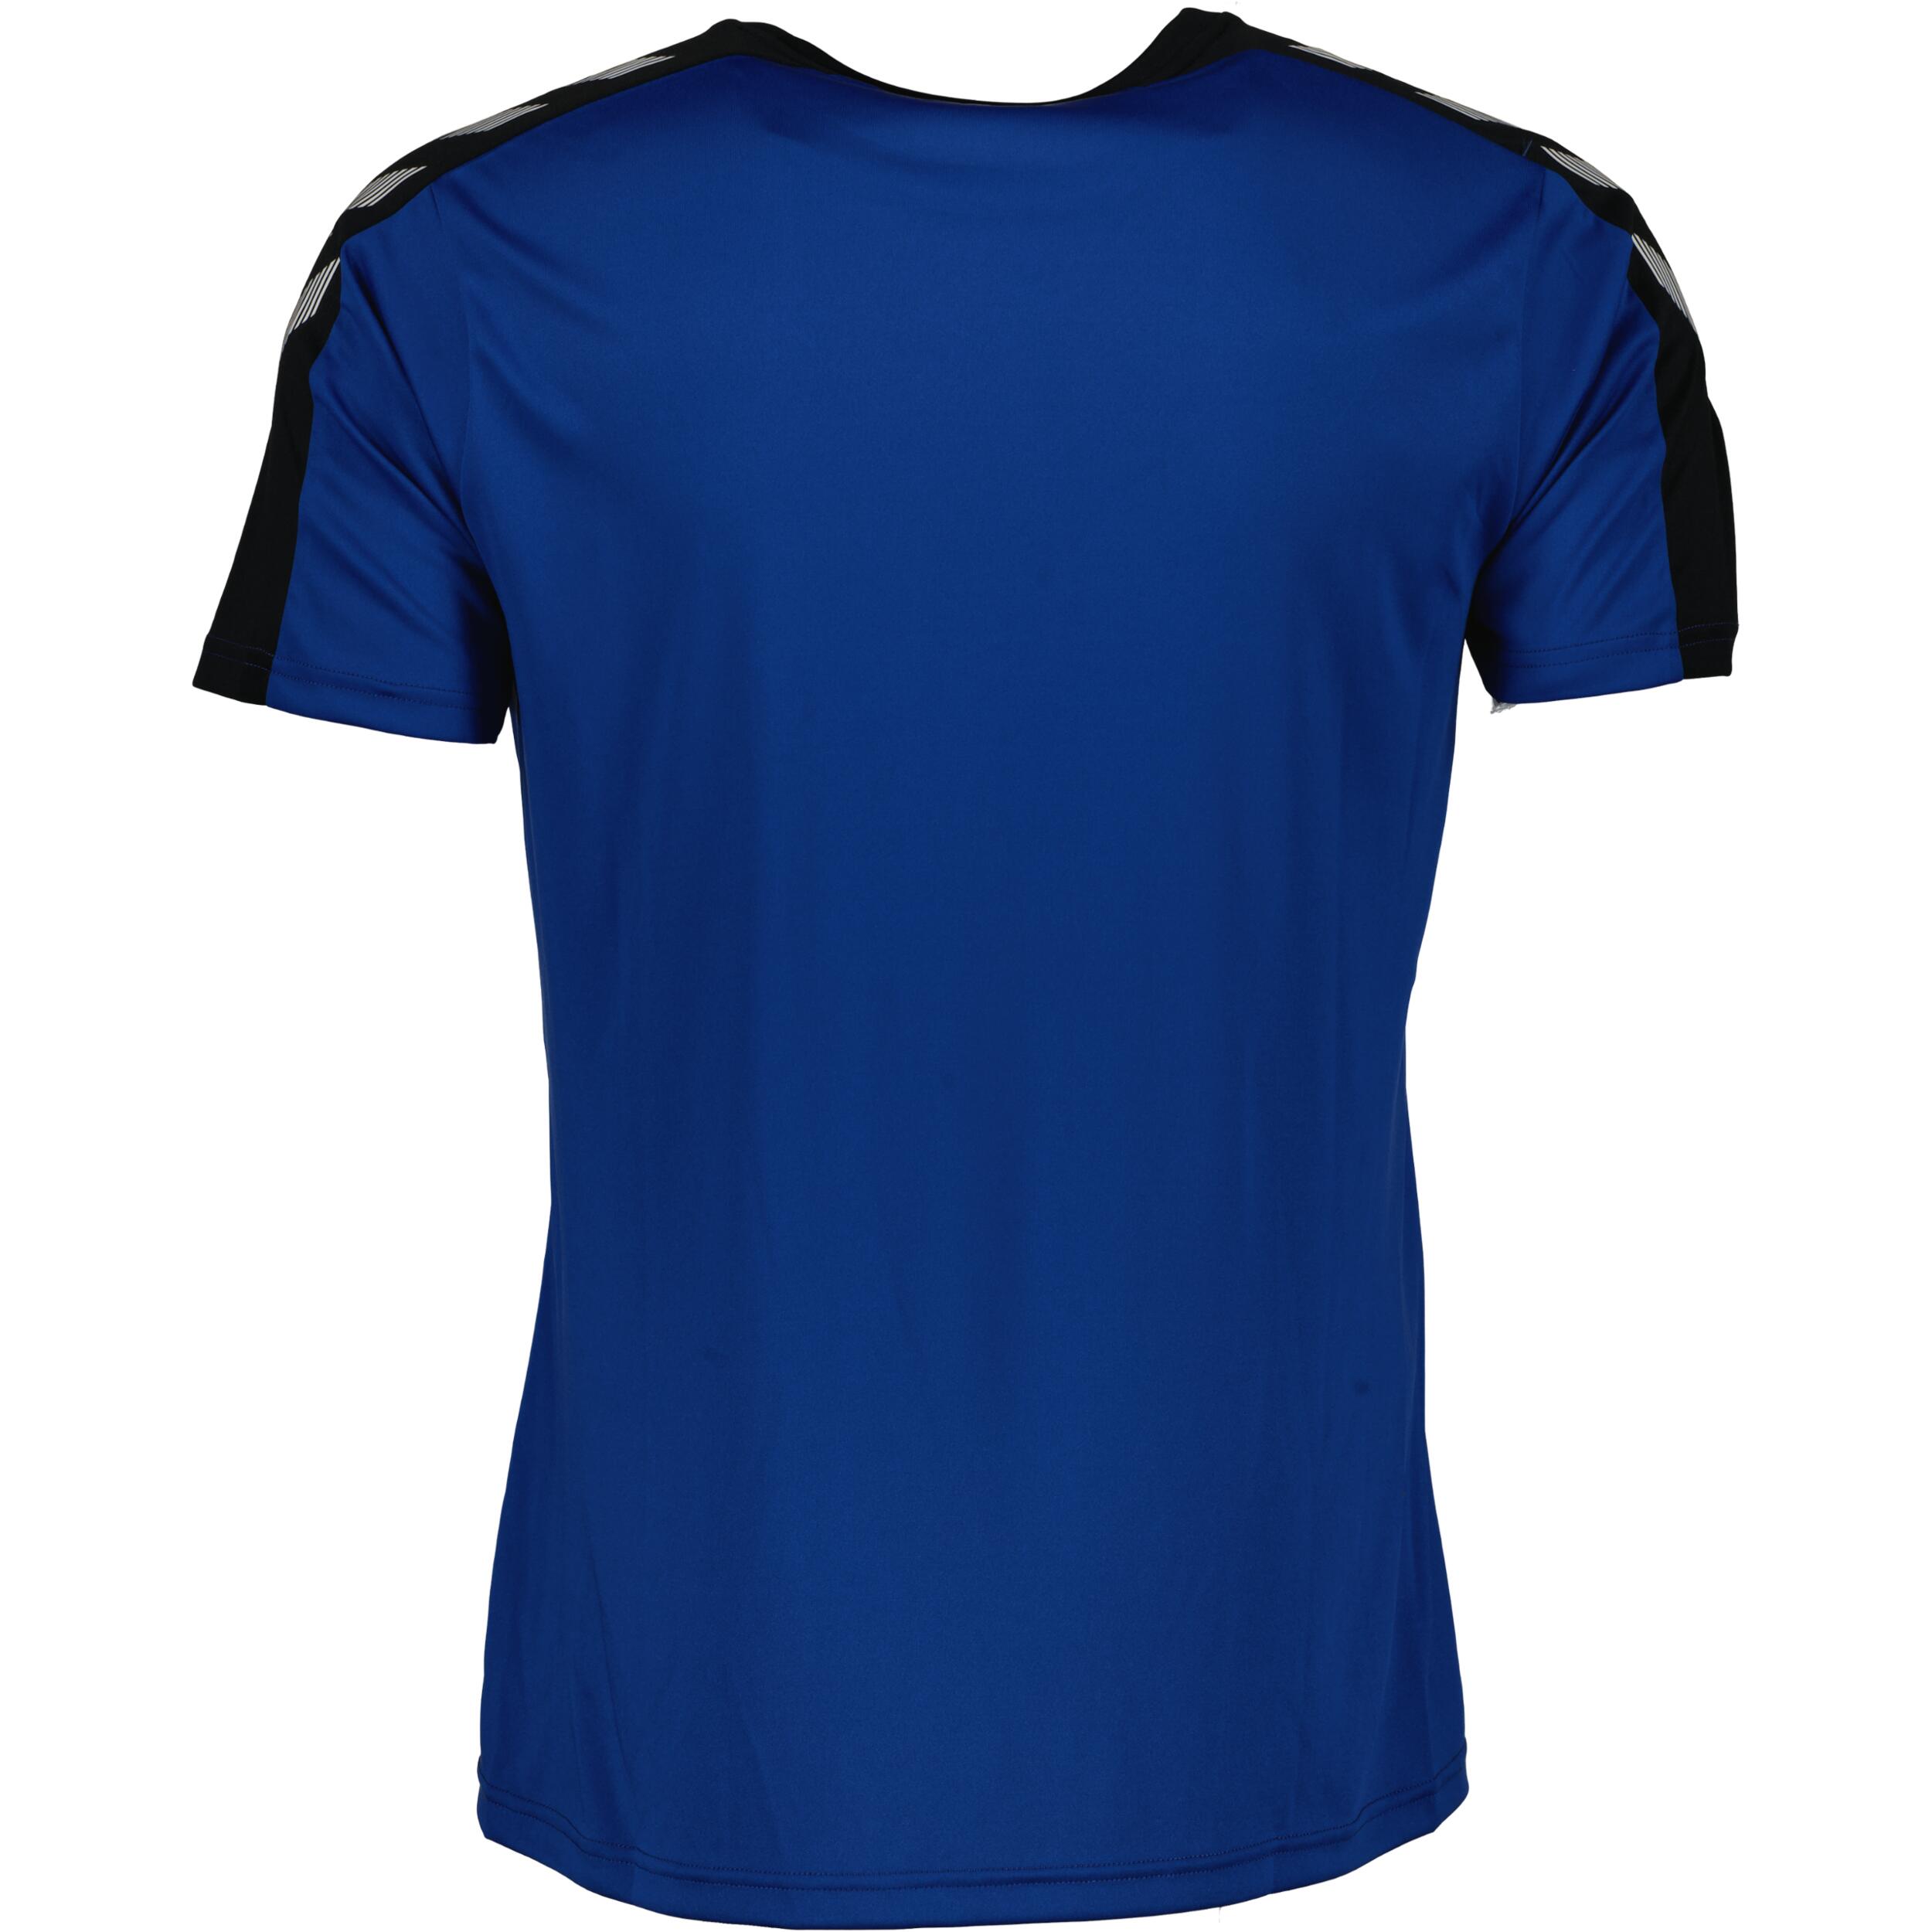 Stripe jersey for kids, great for football, in black/true blue 2/3